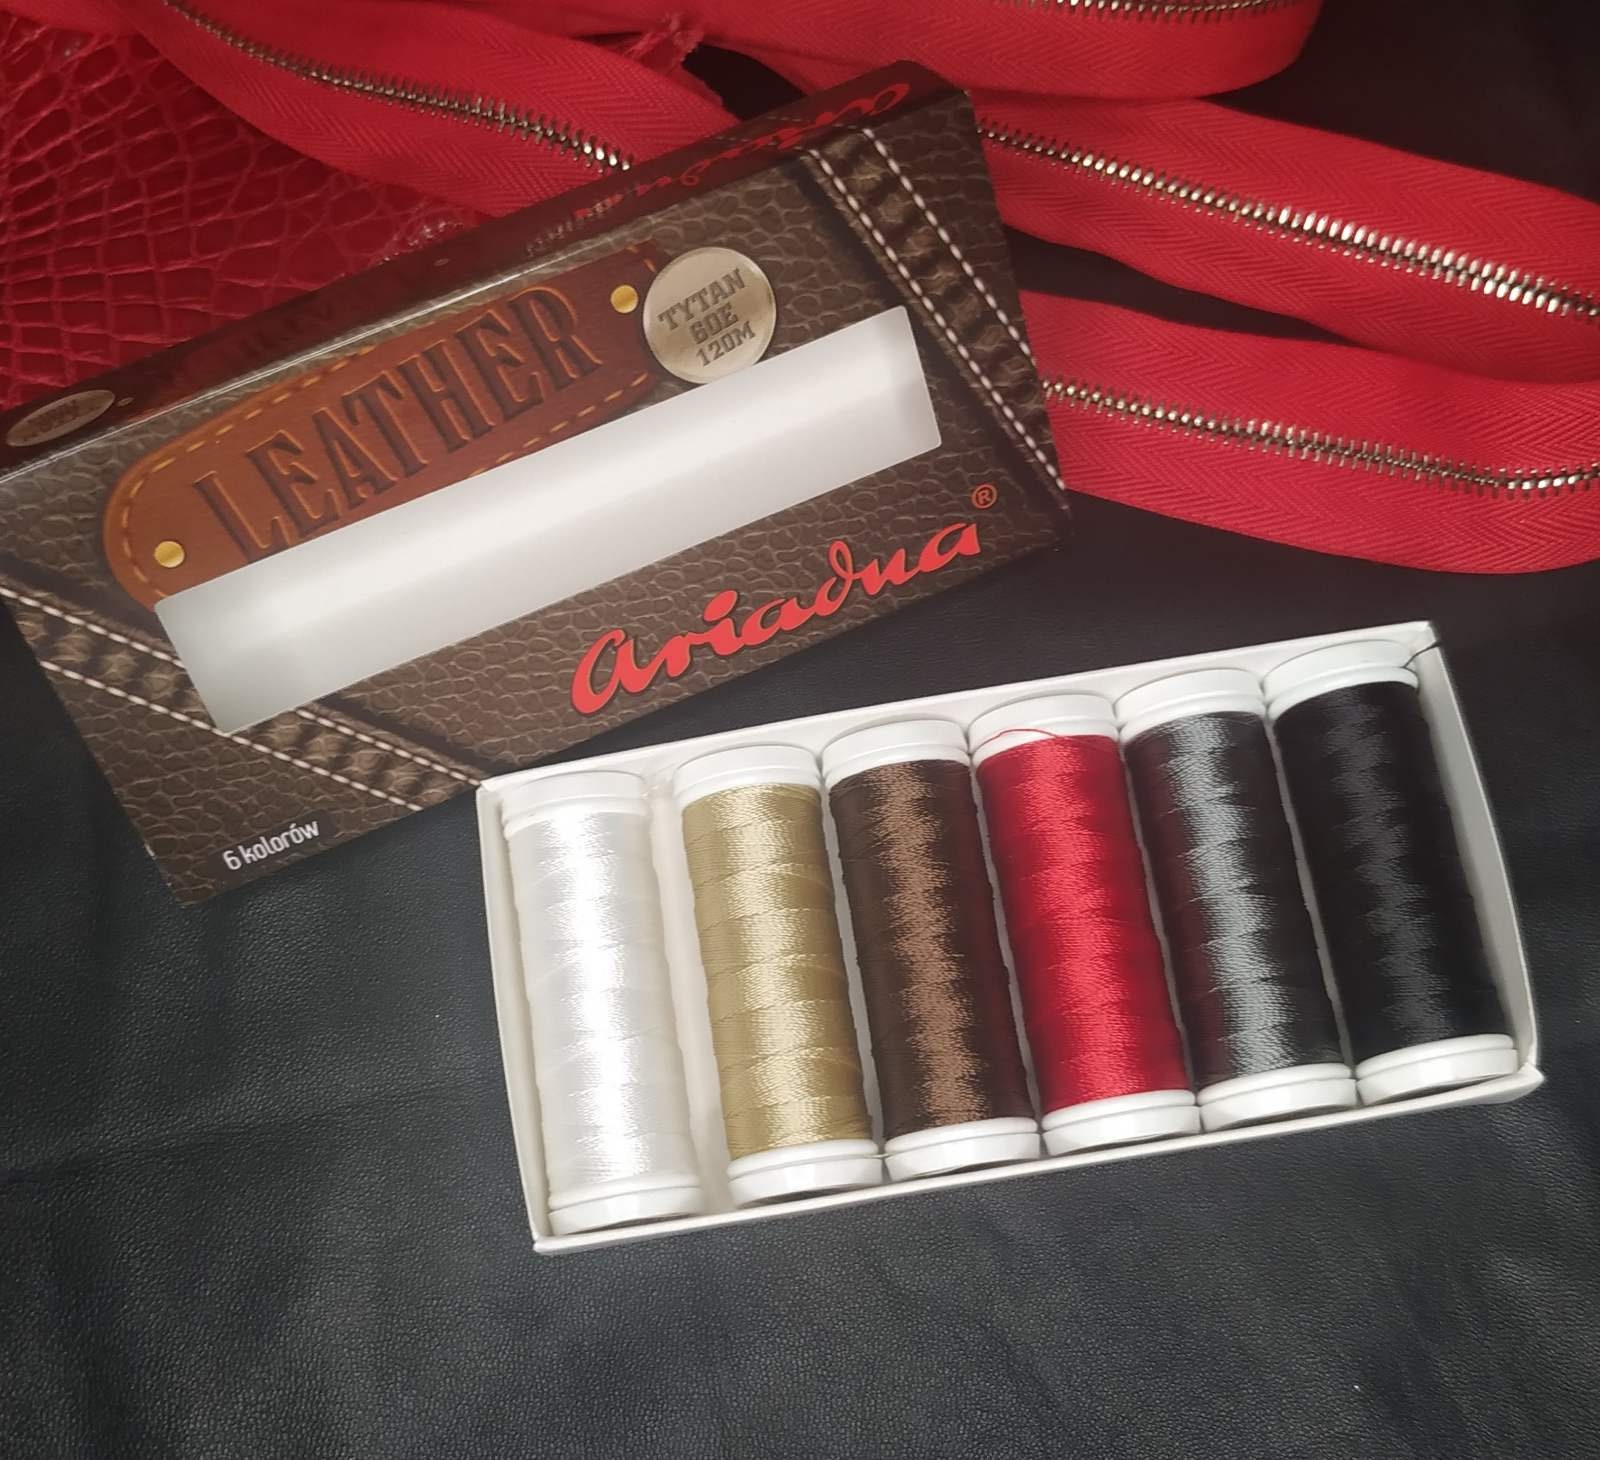 2000 Yards Jean Thread,heavy Duty Thread,top Stitch Thread,denim  Thread,polyester Thick Thread,leather Thread,sewing Machine Thread-203 